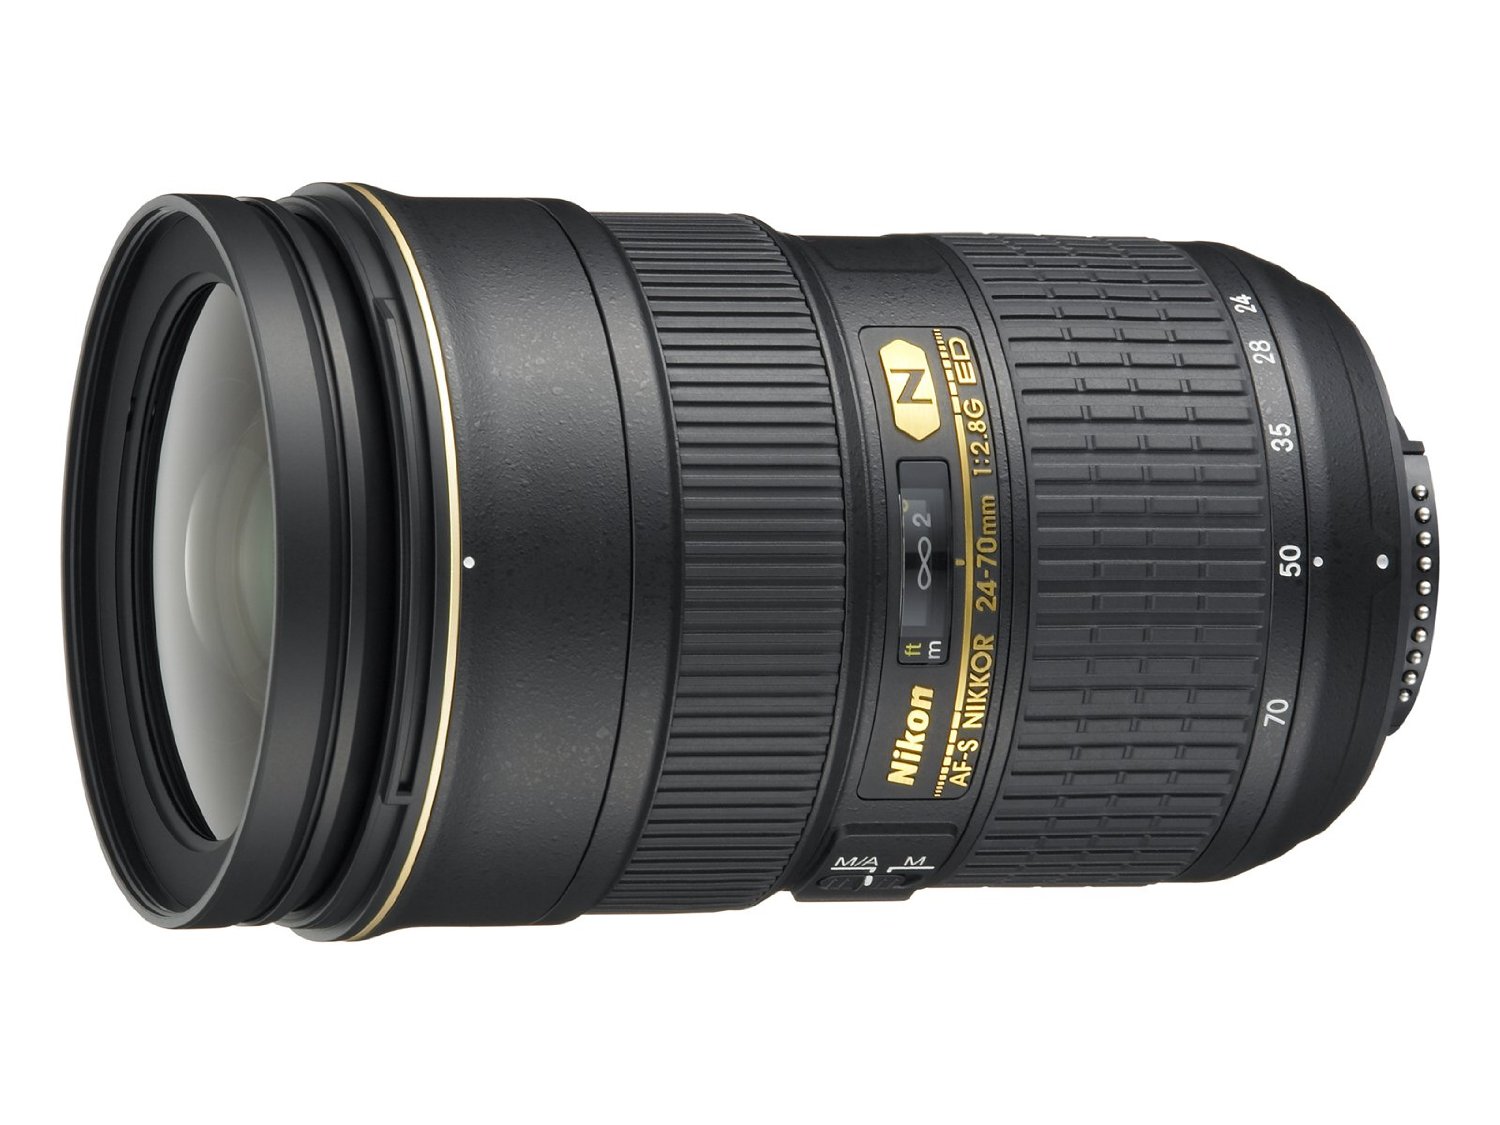 Nikon AF-S FX NIKKOR 24-70mm f/2.8G ED Zoom Lens with Auto Focus for DSLR Cameras